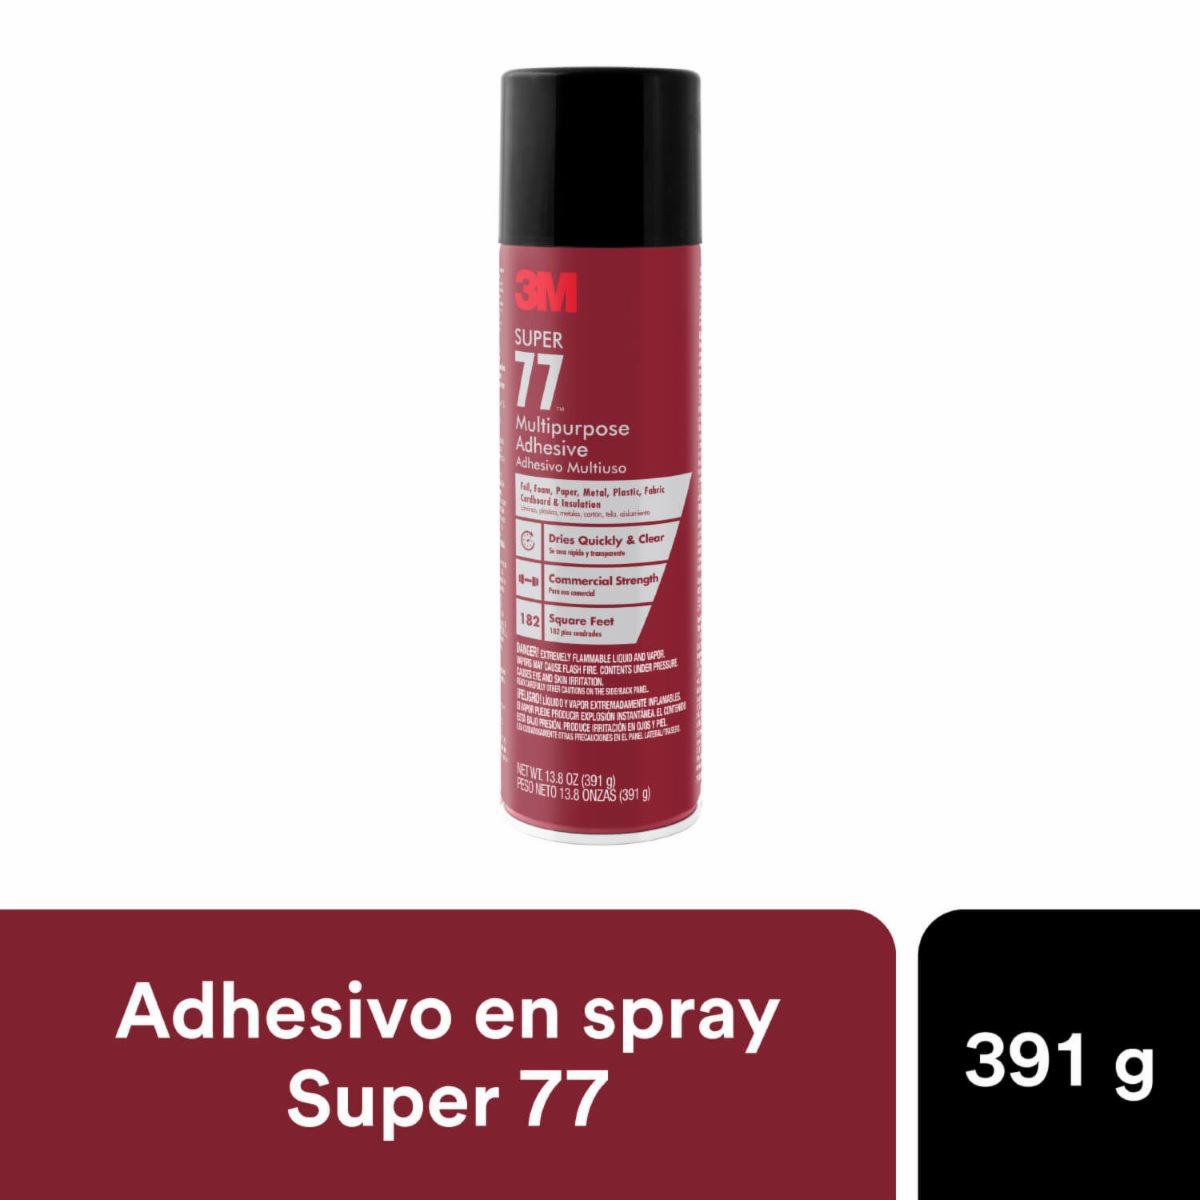 Spray Super 77 de 3M, el adhesivo multiusos que querrás tener 